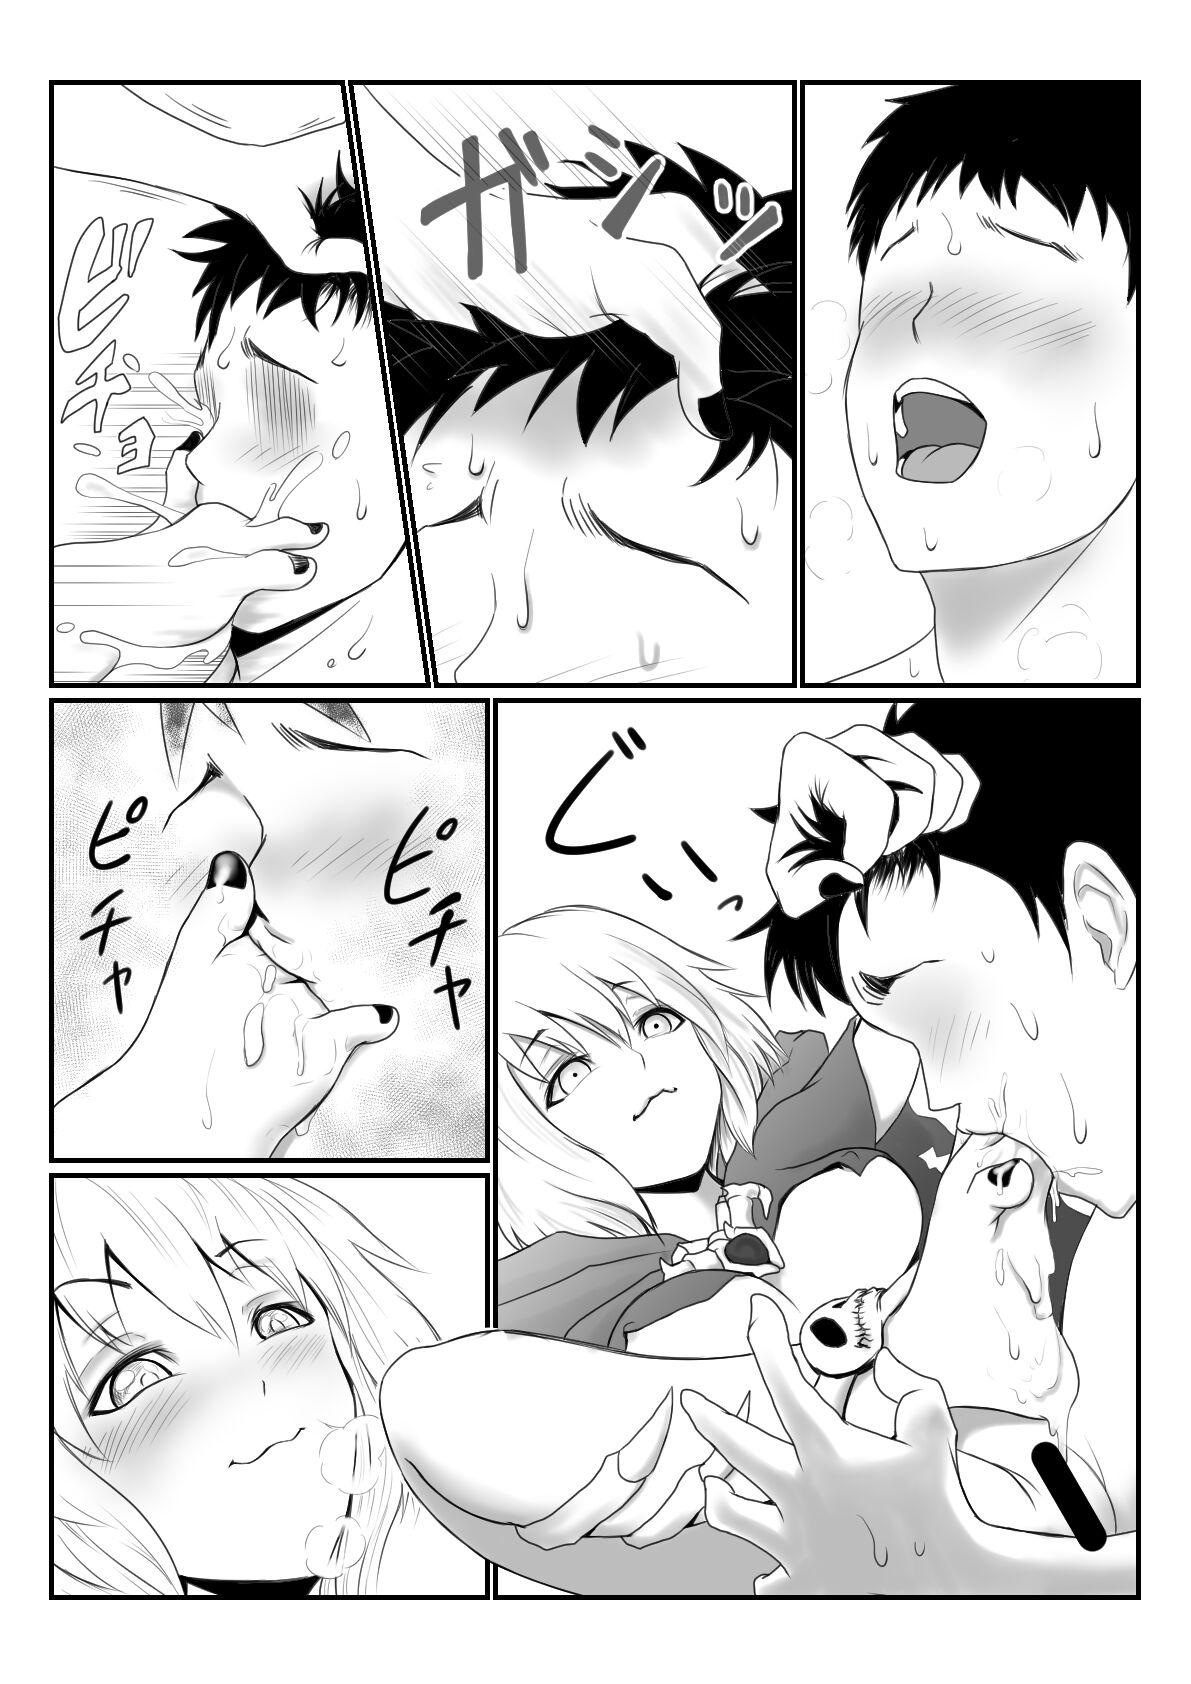 Lich Manga 4